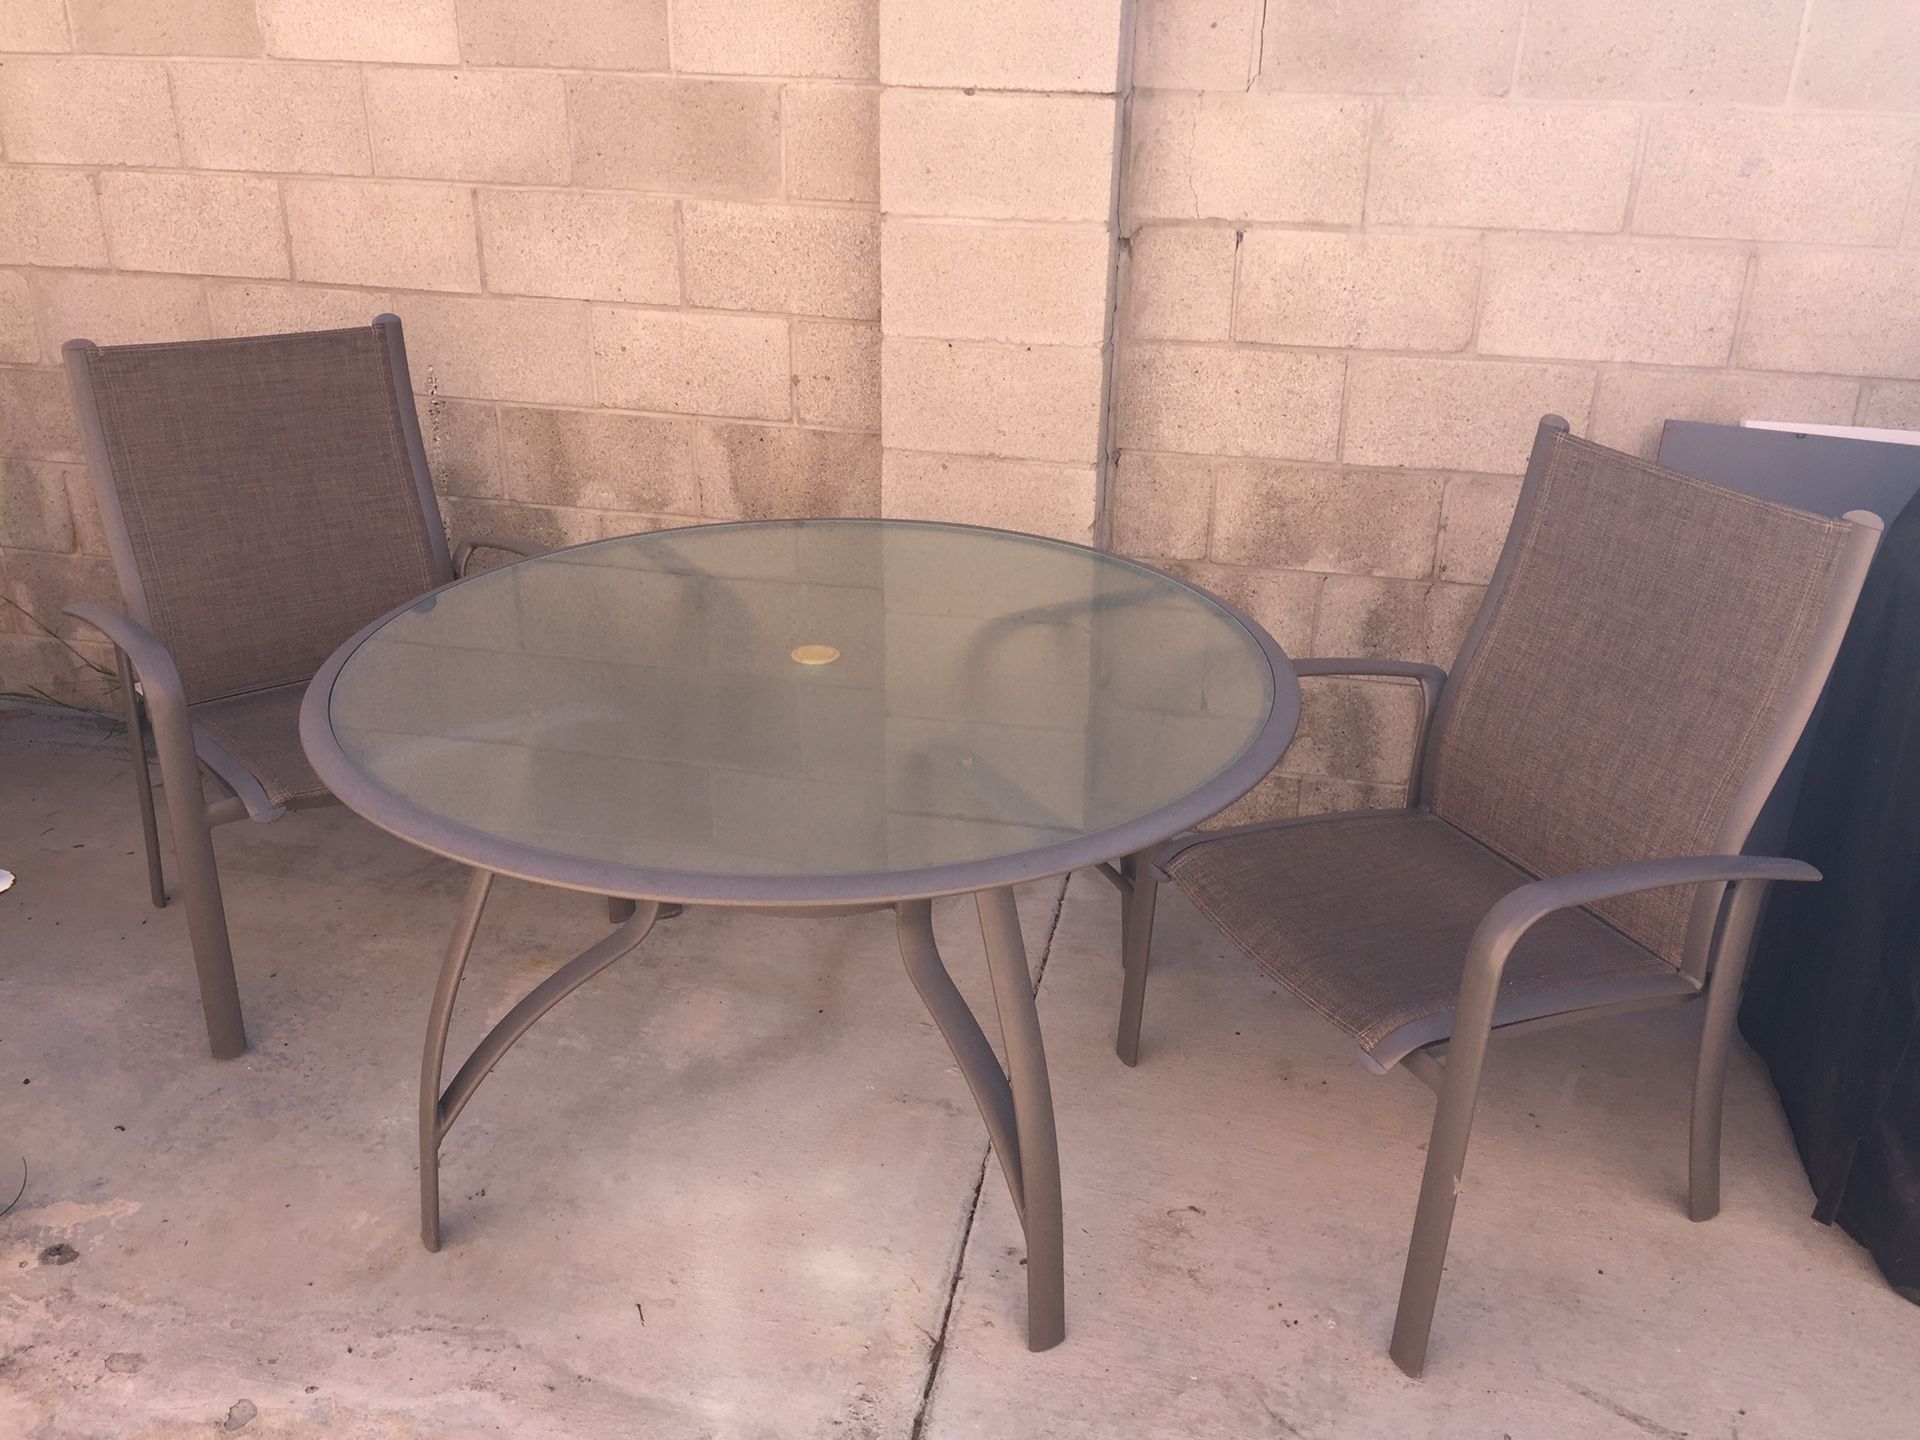 3 piece patio furniture